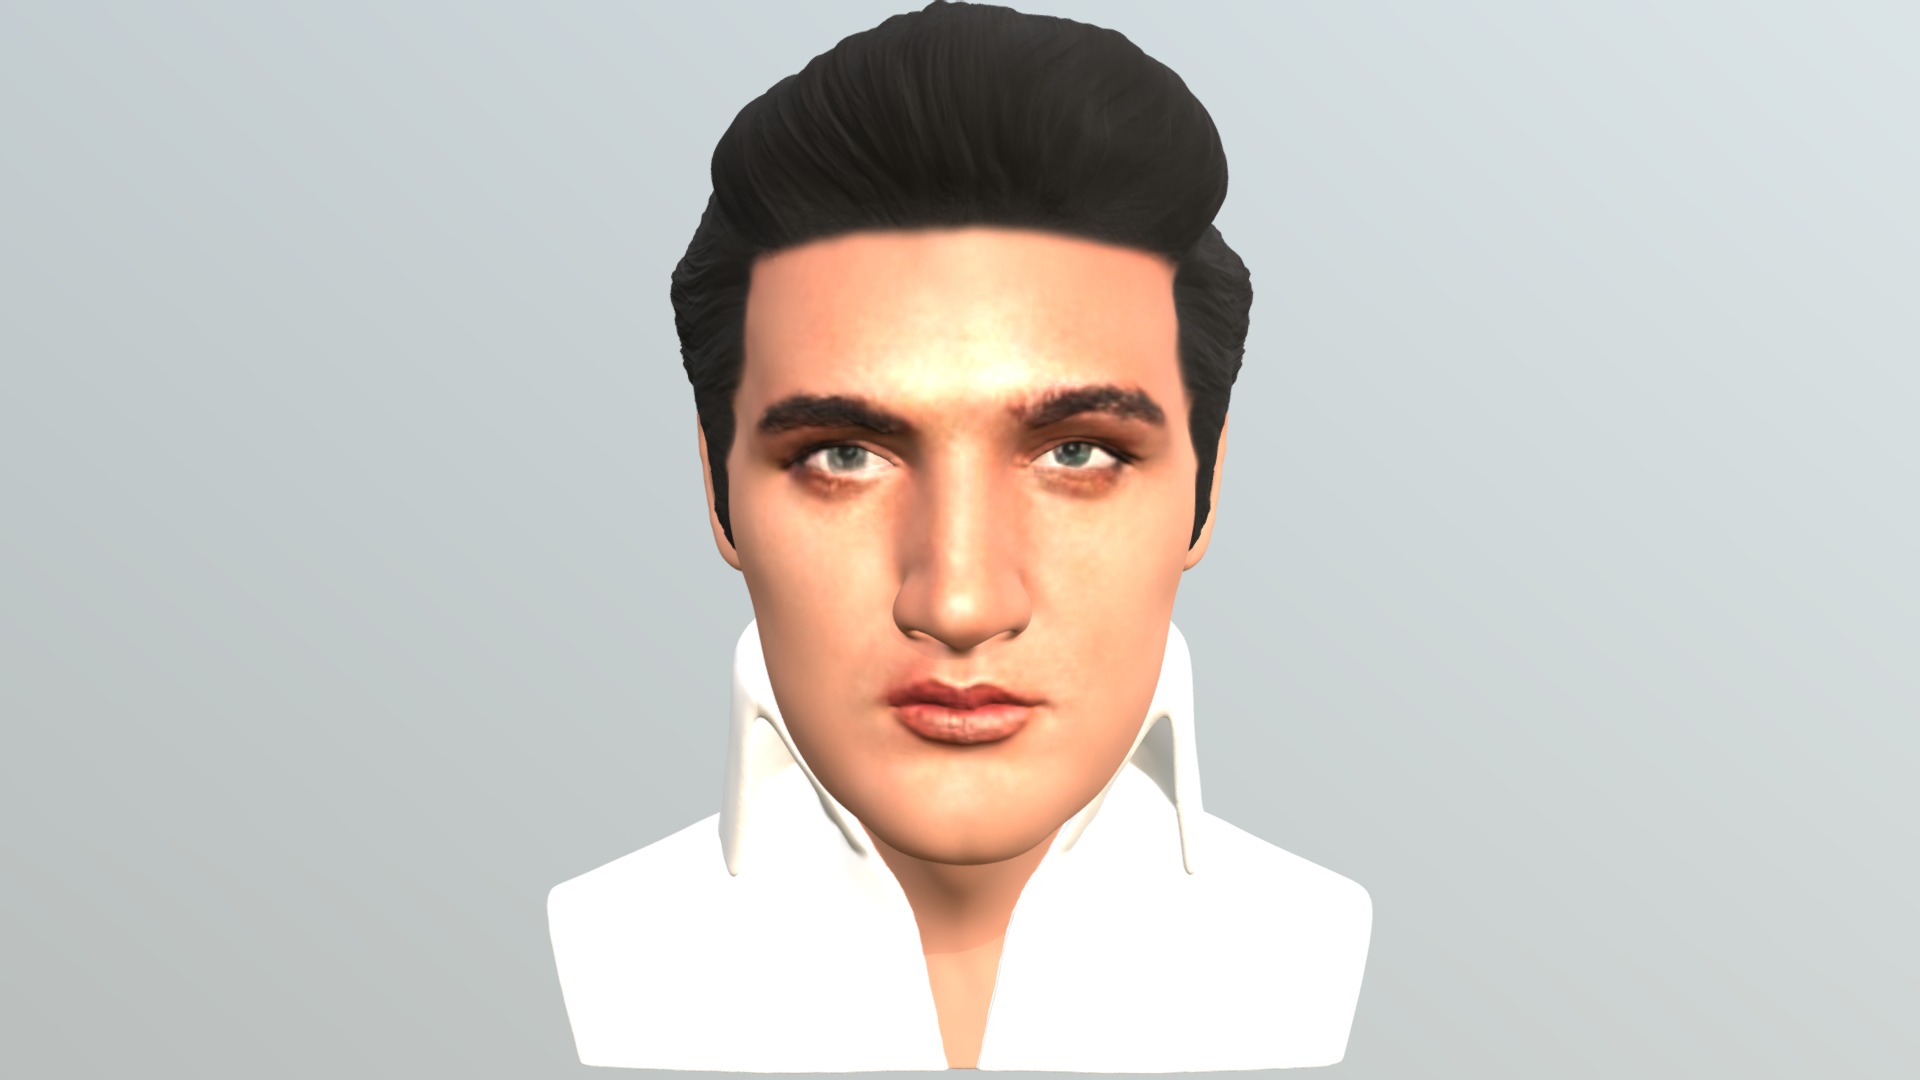 3D model Elvis Presley bust for full color 3D printing